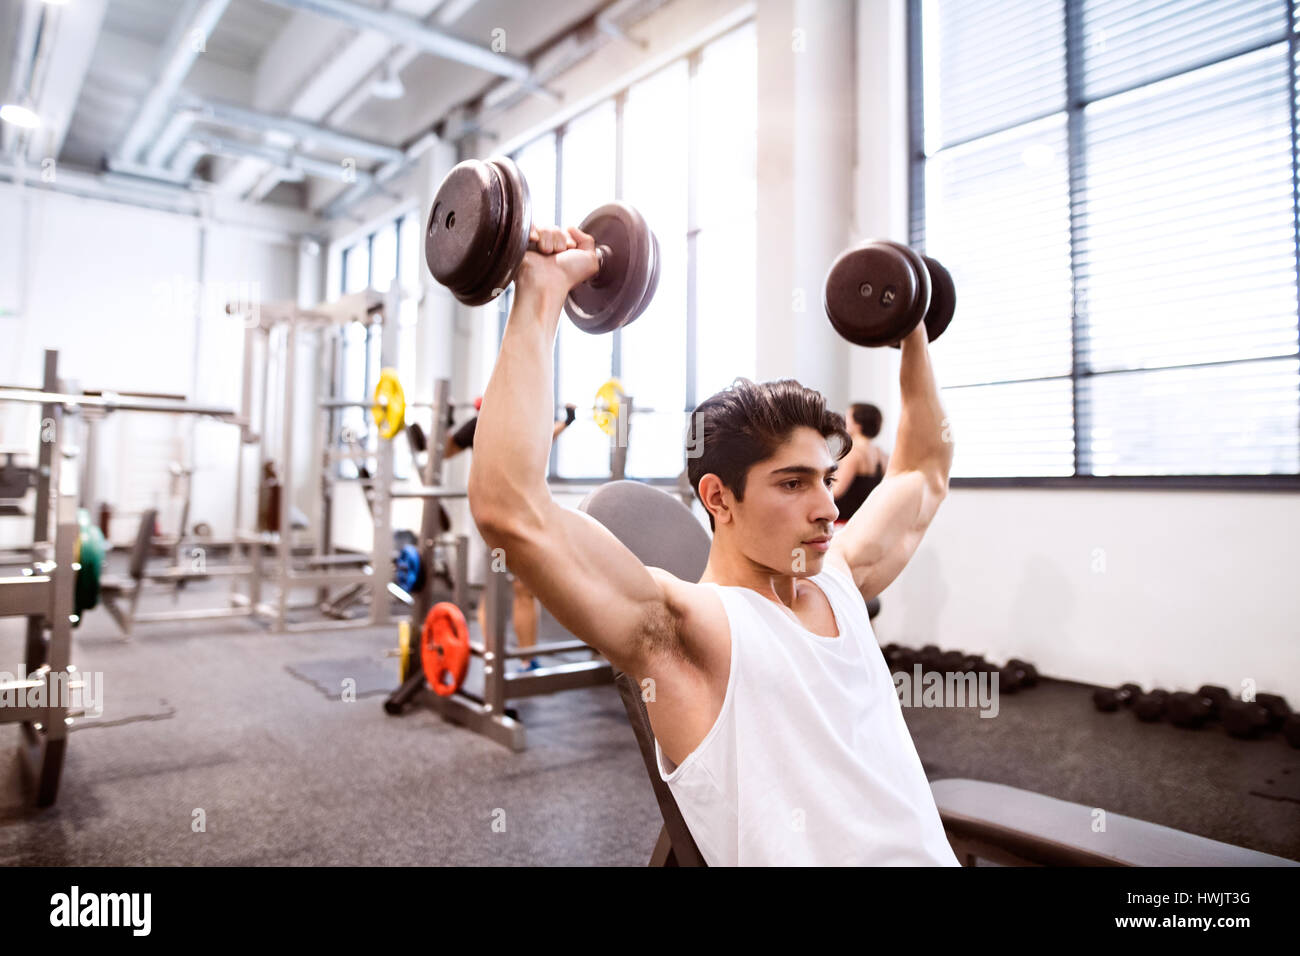 Junge spanische Fitness Mann in Turnhalle sitzen auf Bank, trainieren mit Gewichten Stockfoto